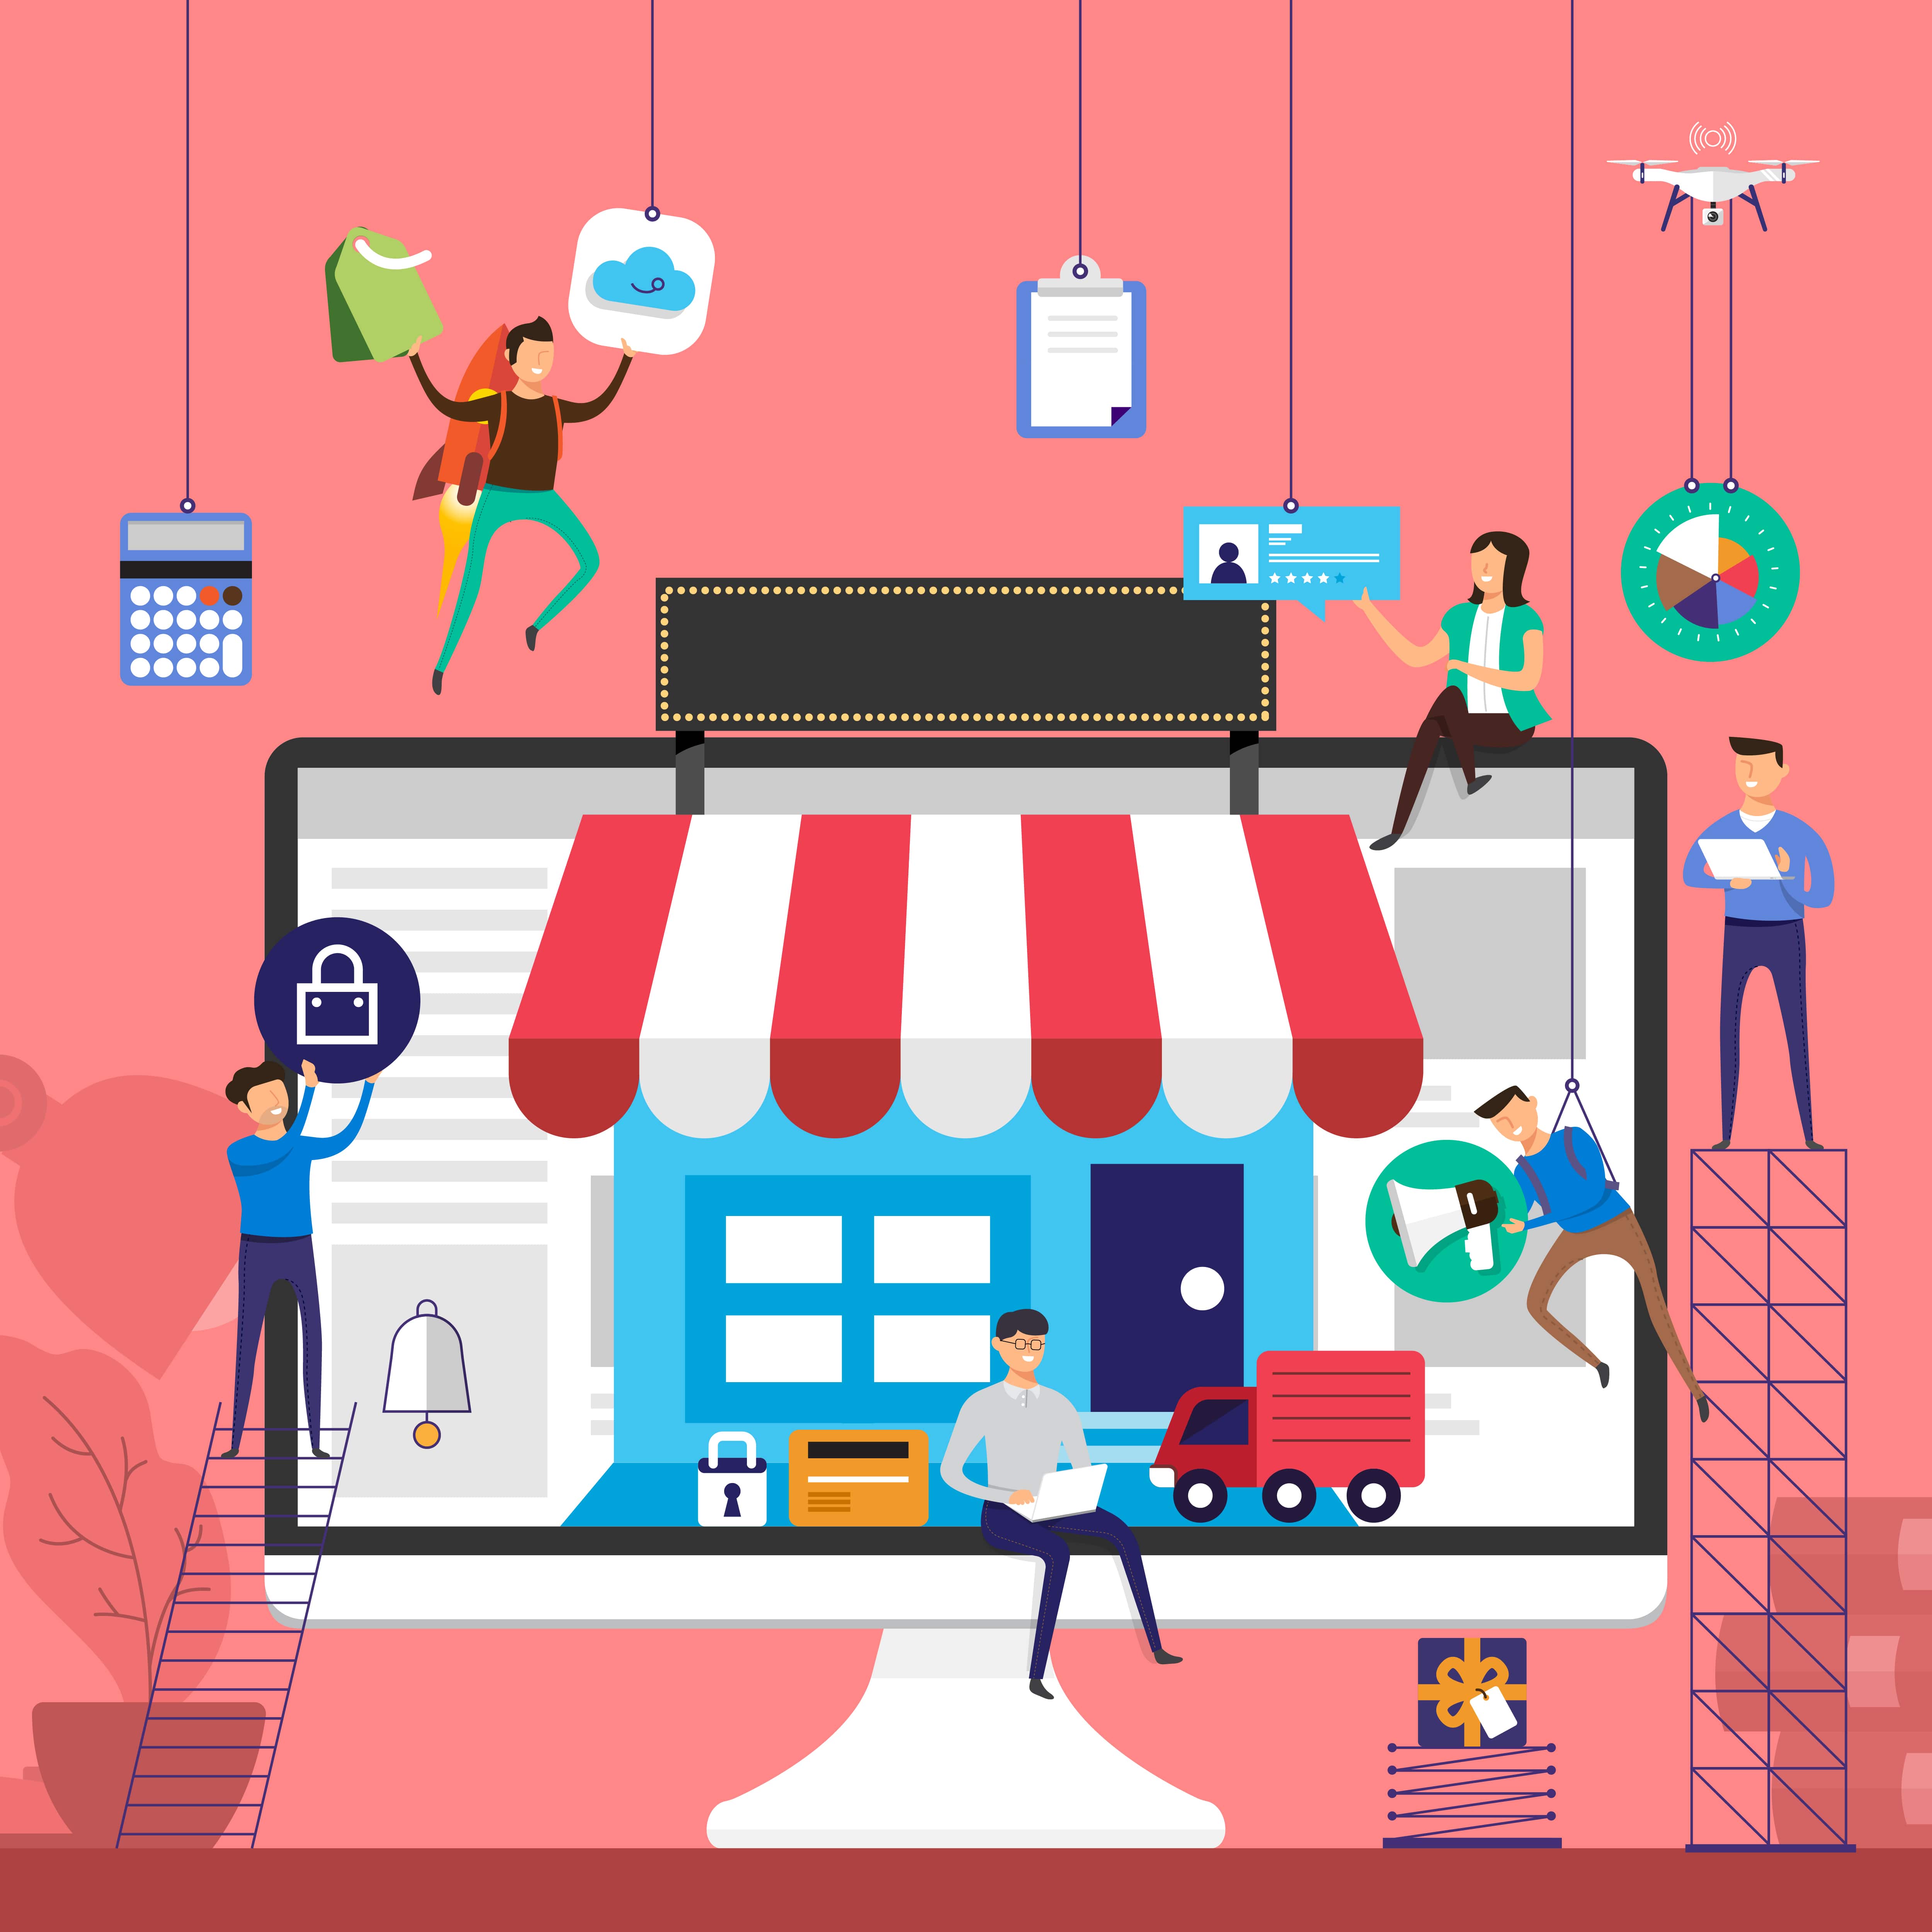 חנות מג'נטו – מקימים חנות מקצועית ברשת